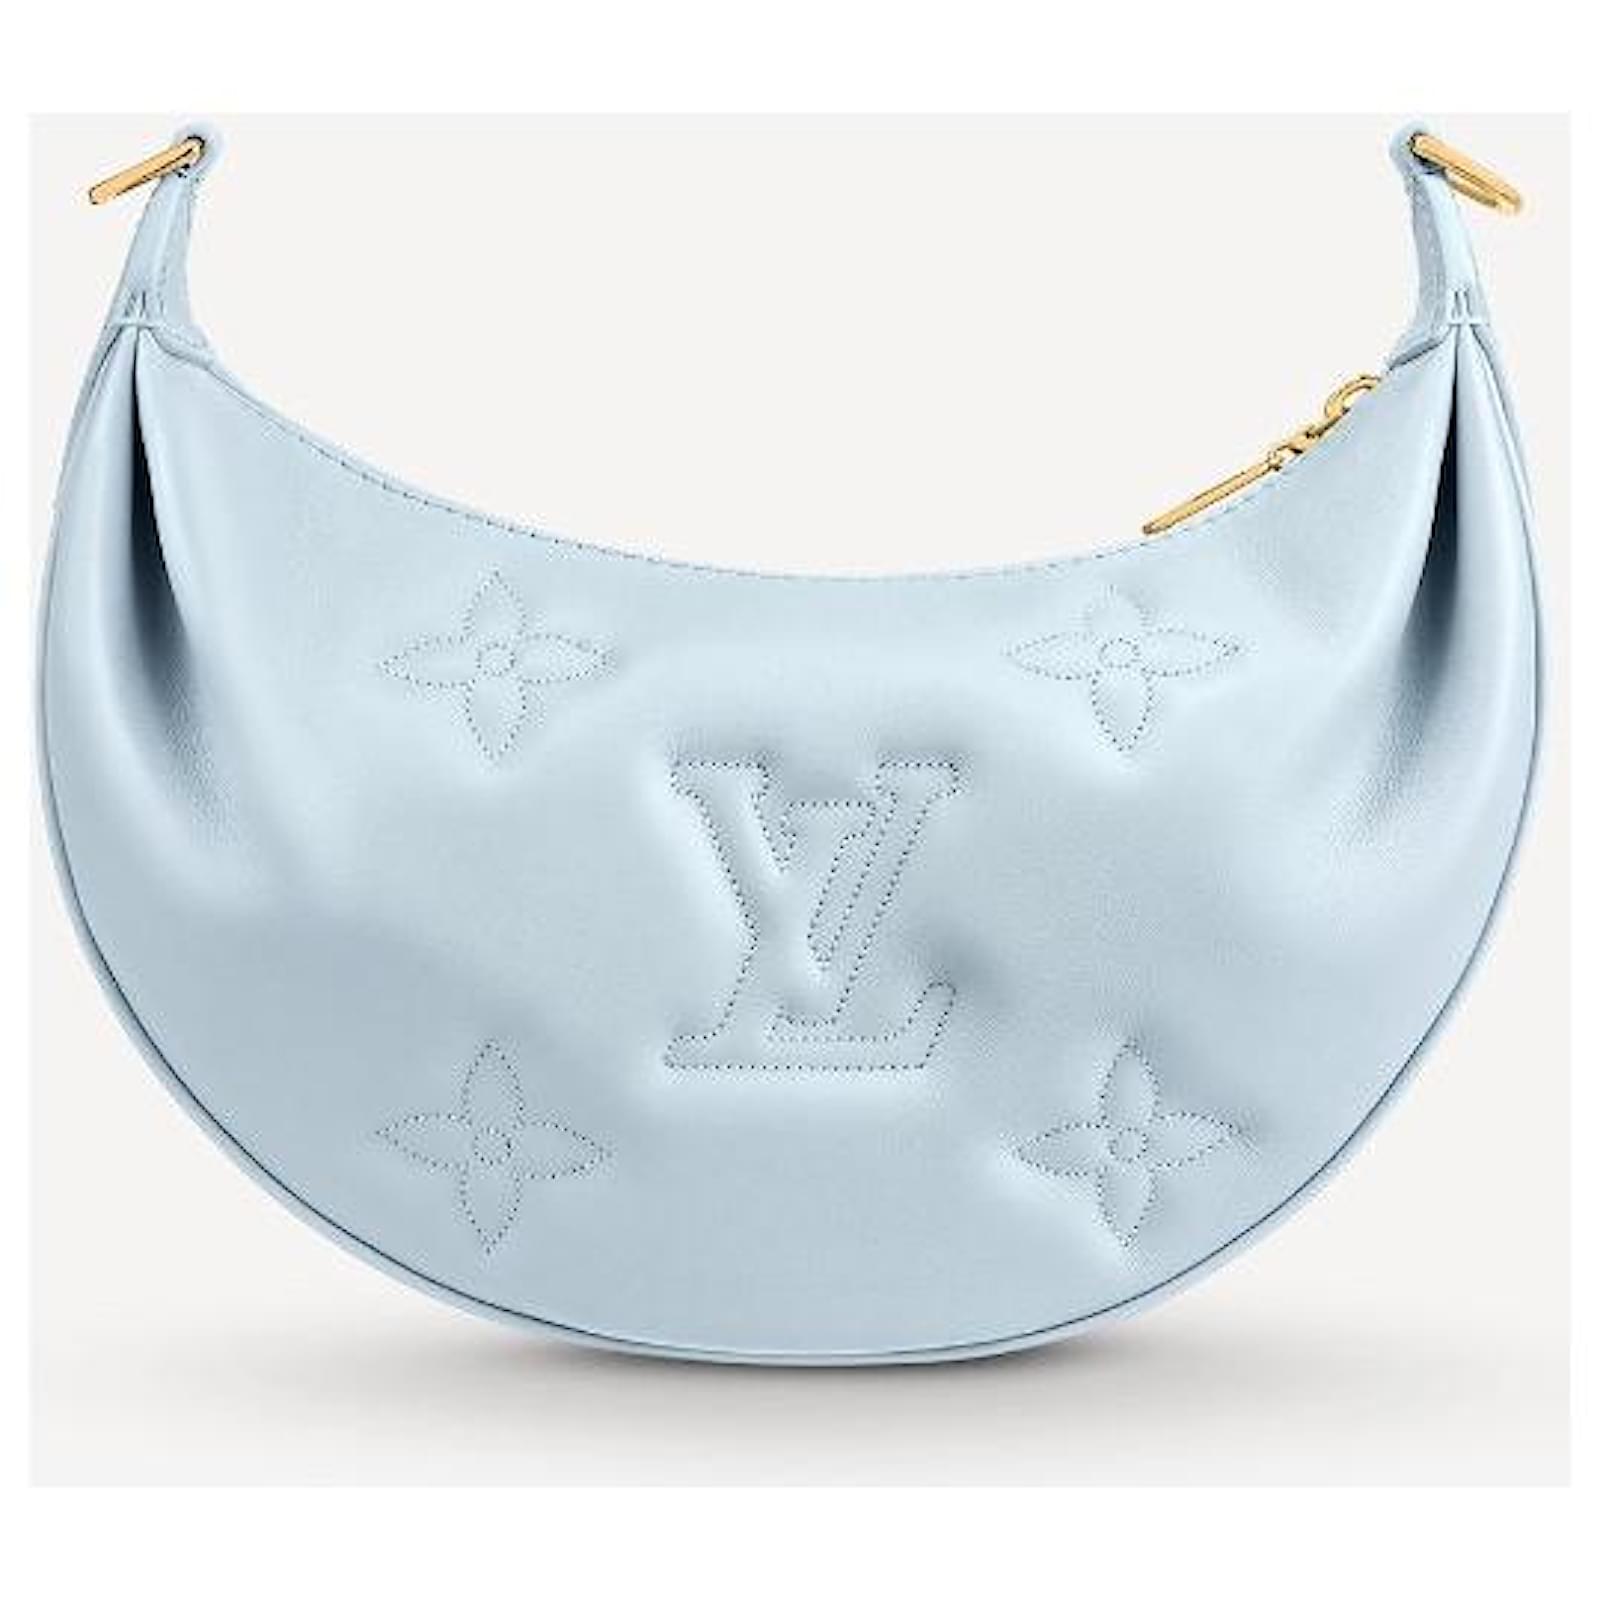 Louis Vuitton Over The Moon Bag Bubblegram Leather Blue